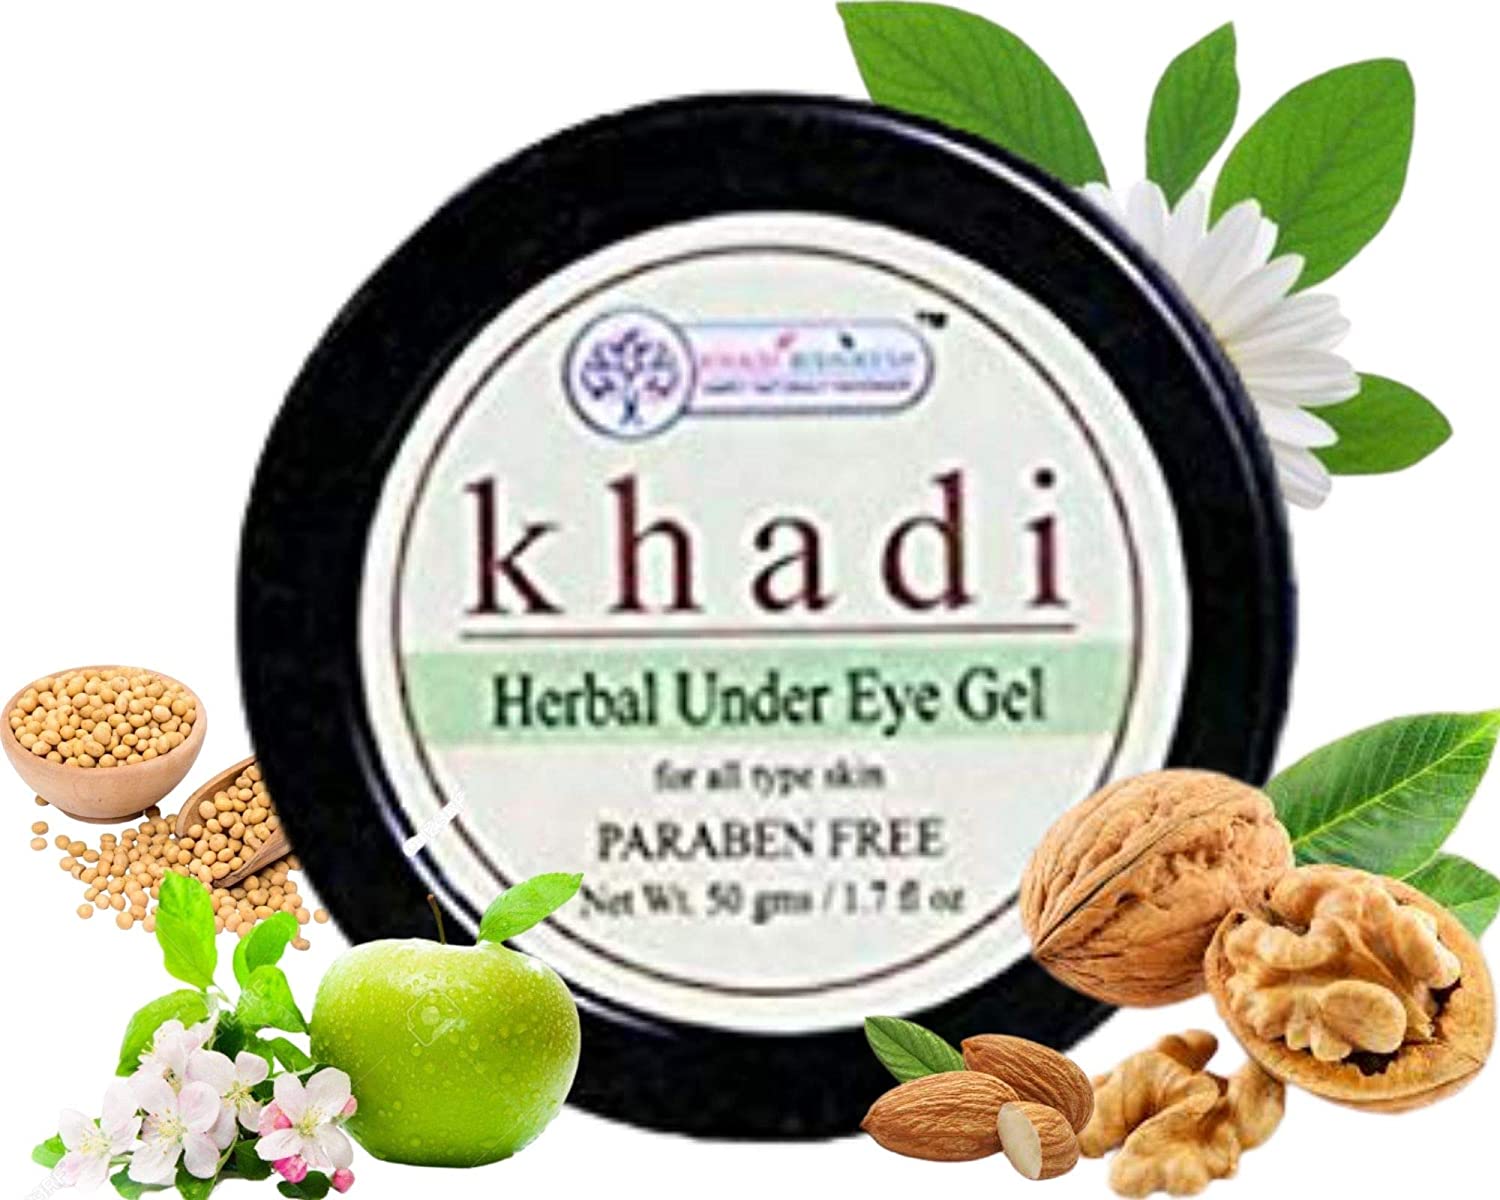 khadi-herbal-under-eye-cream-gel